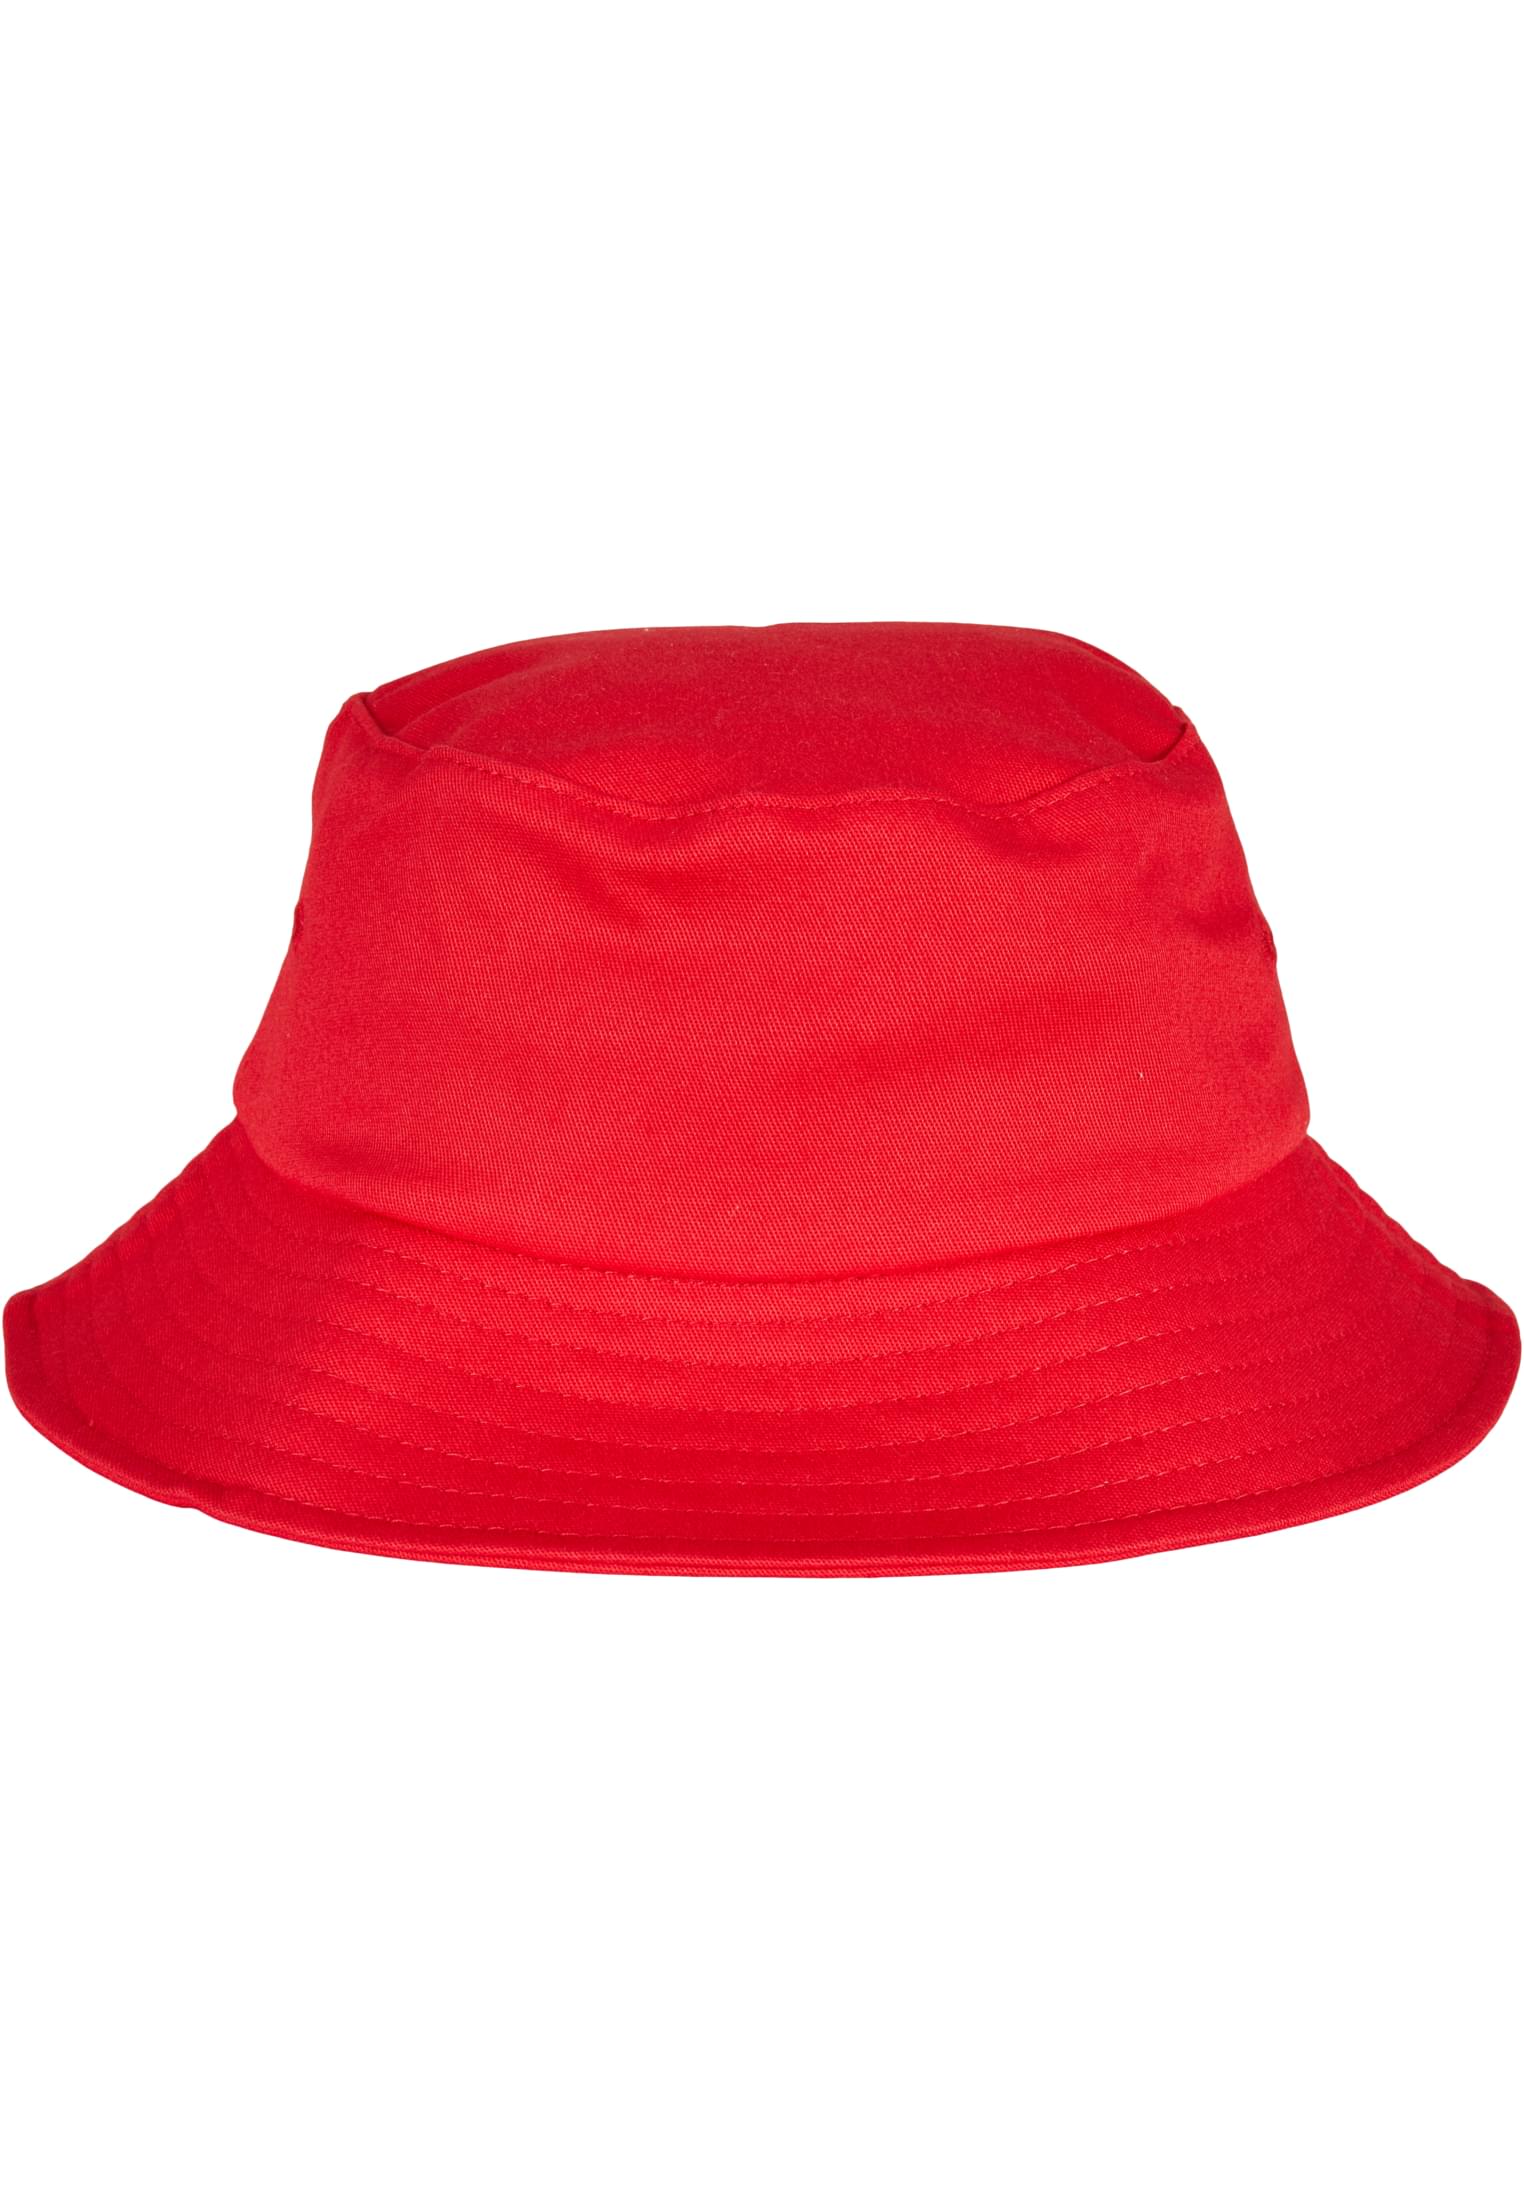 Бейсболка Flexfit Bucket Hat, красный